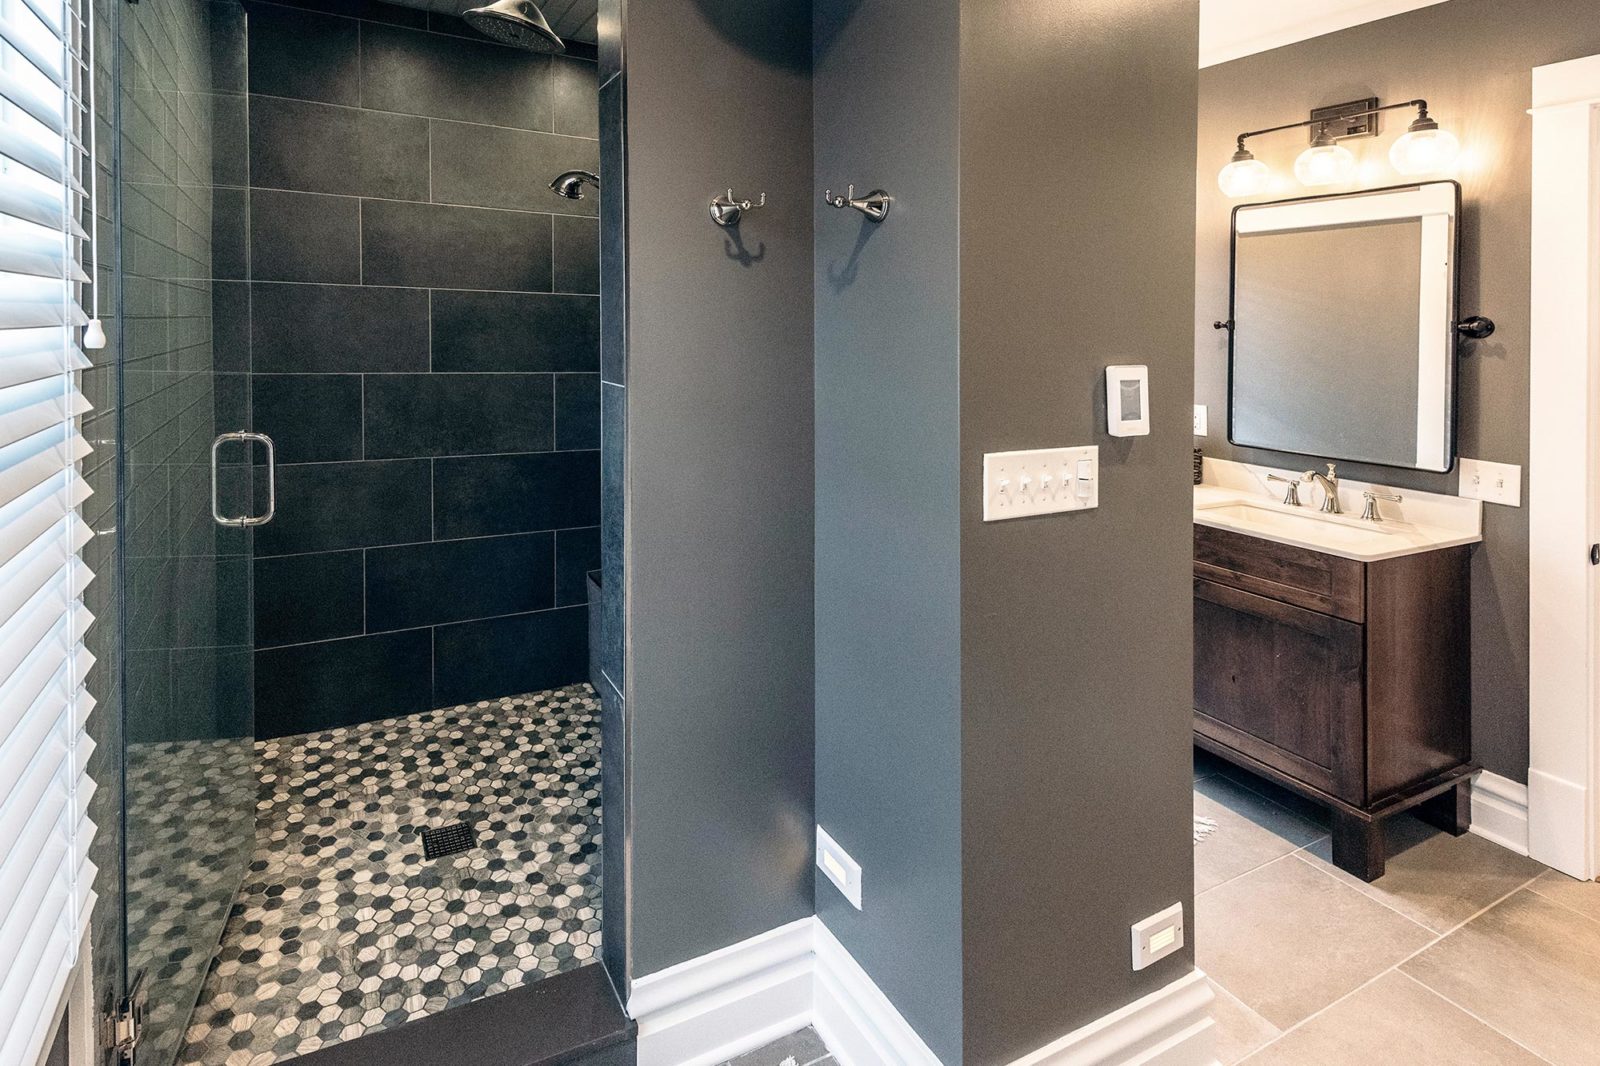 LivCo bathroom renovation glass shower grey walls black tile vintage vanity